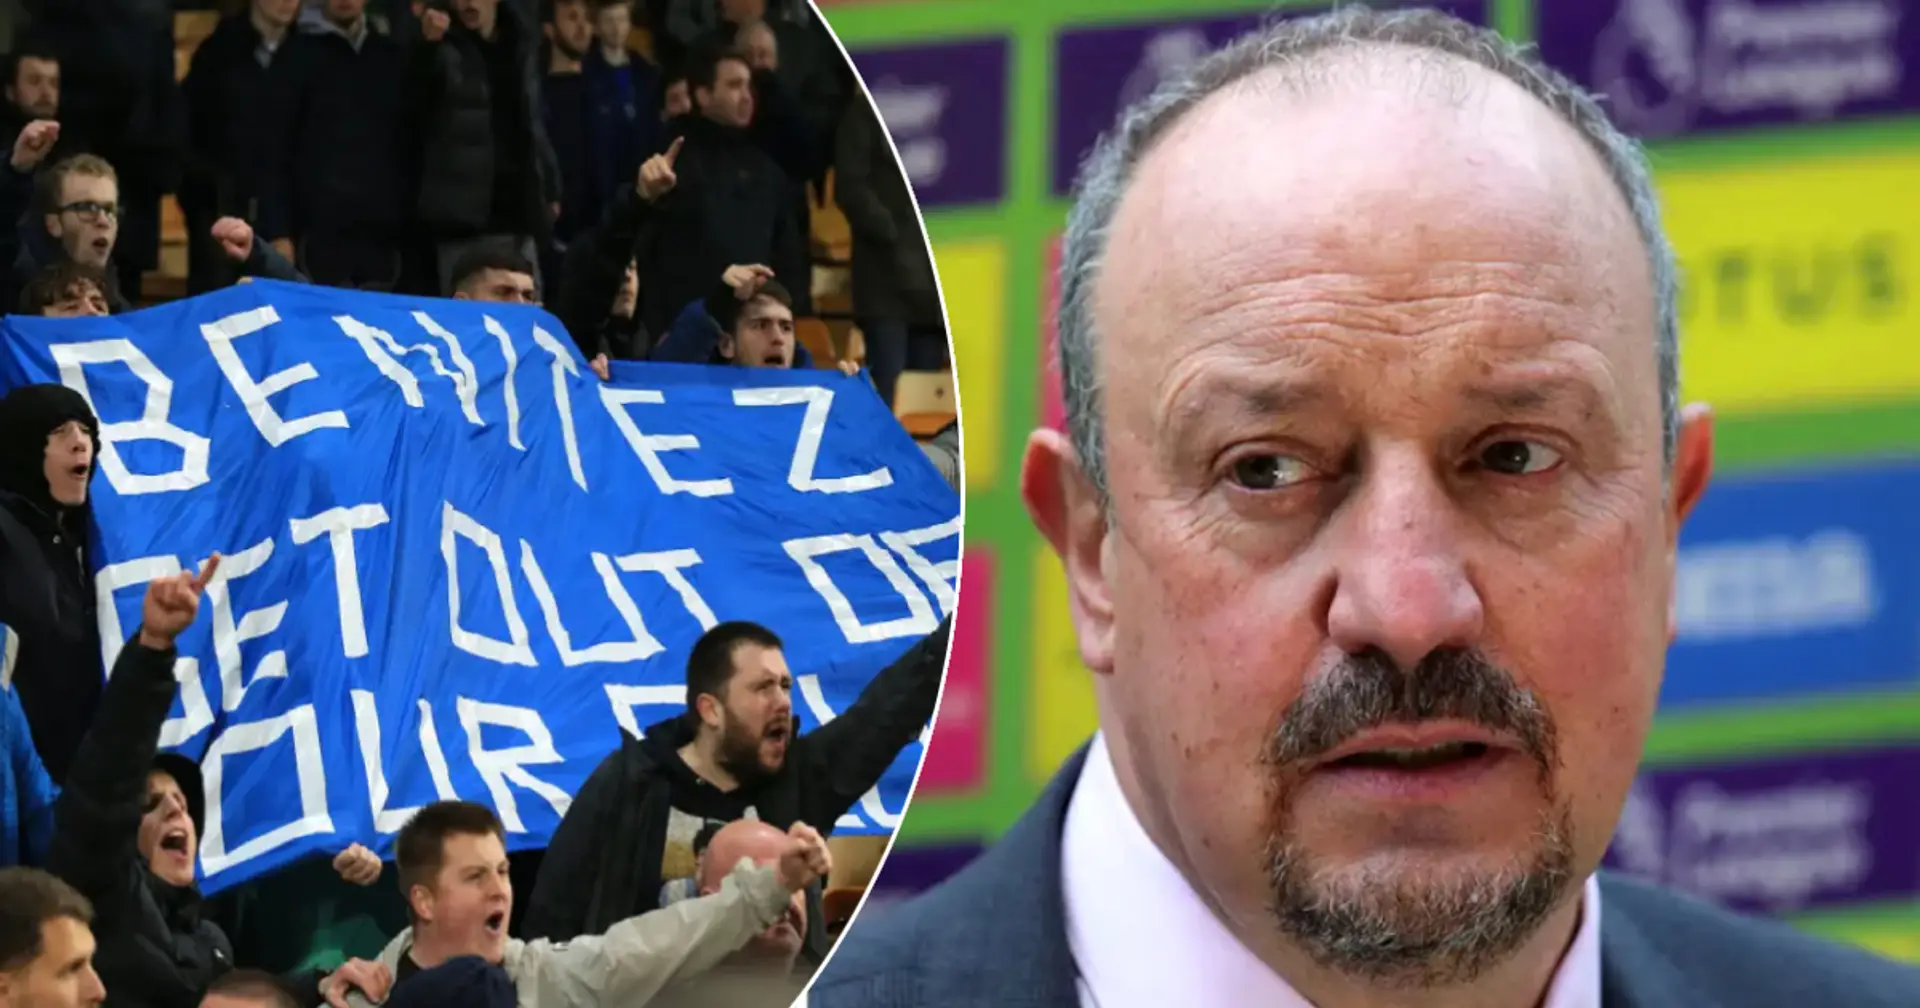 "Heutzutage gibt es im Fußball weniger Geduld": Rafa Benitez teilt seine Abschiedsbotschaft nach der Entlassung von Everton